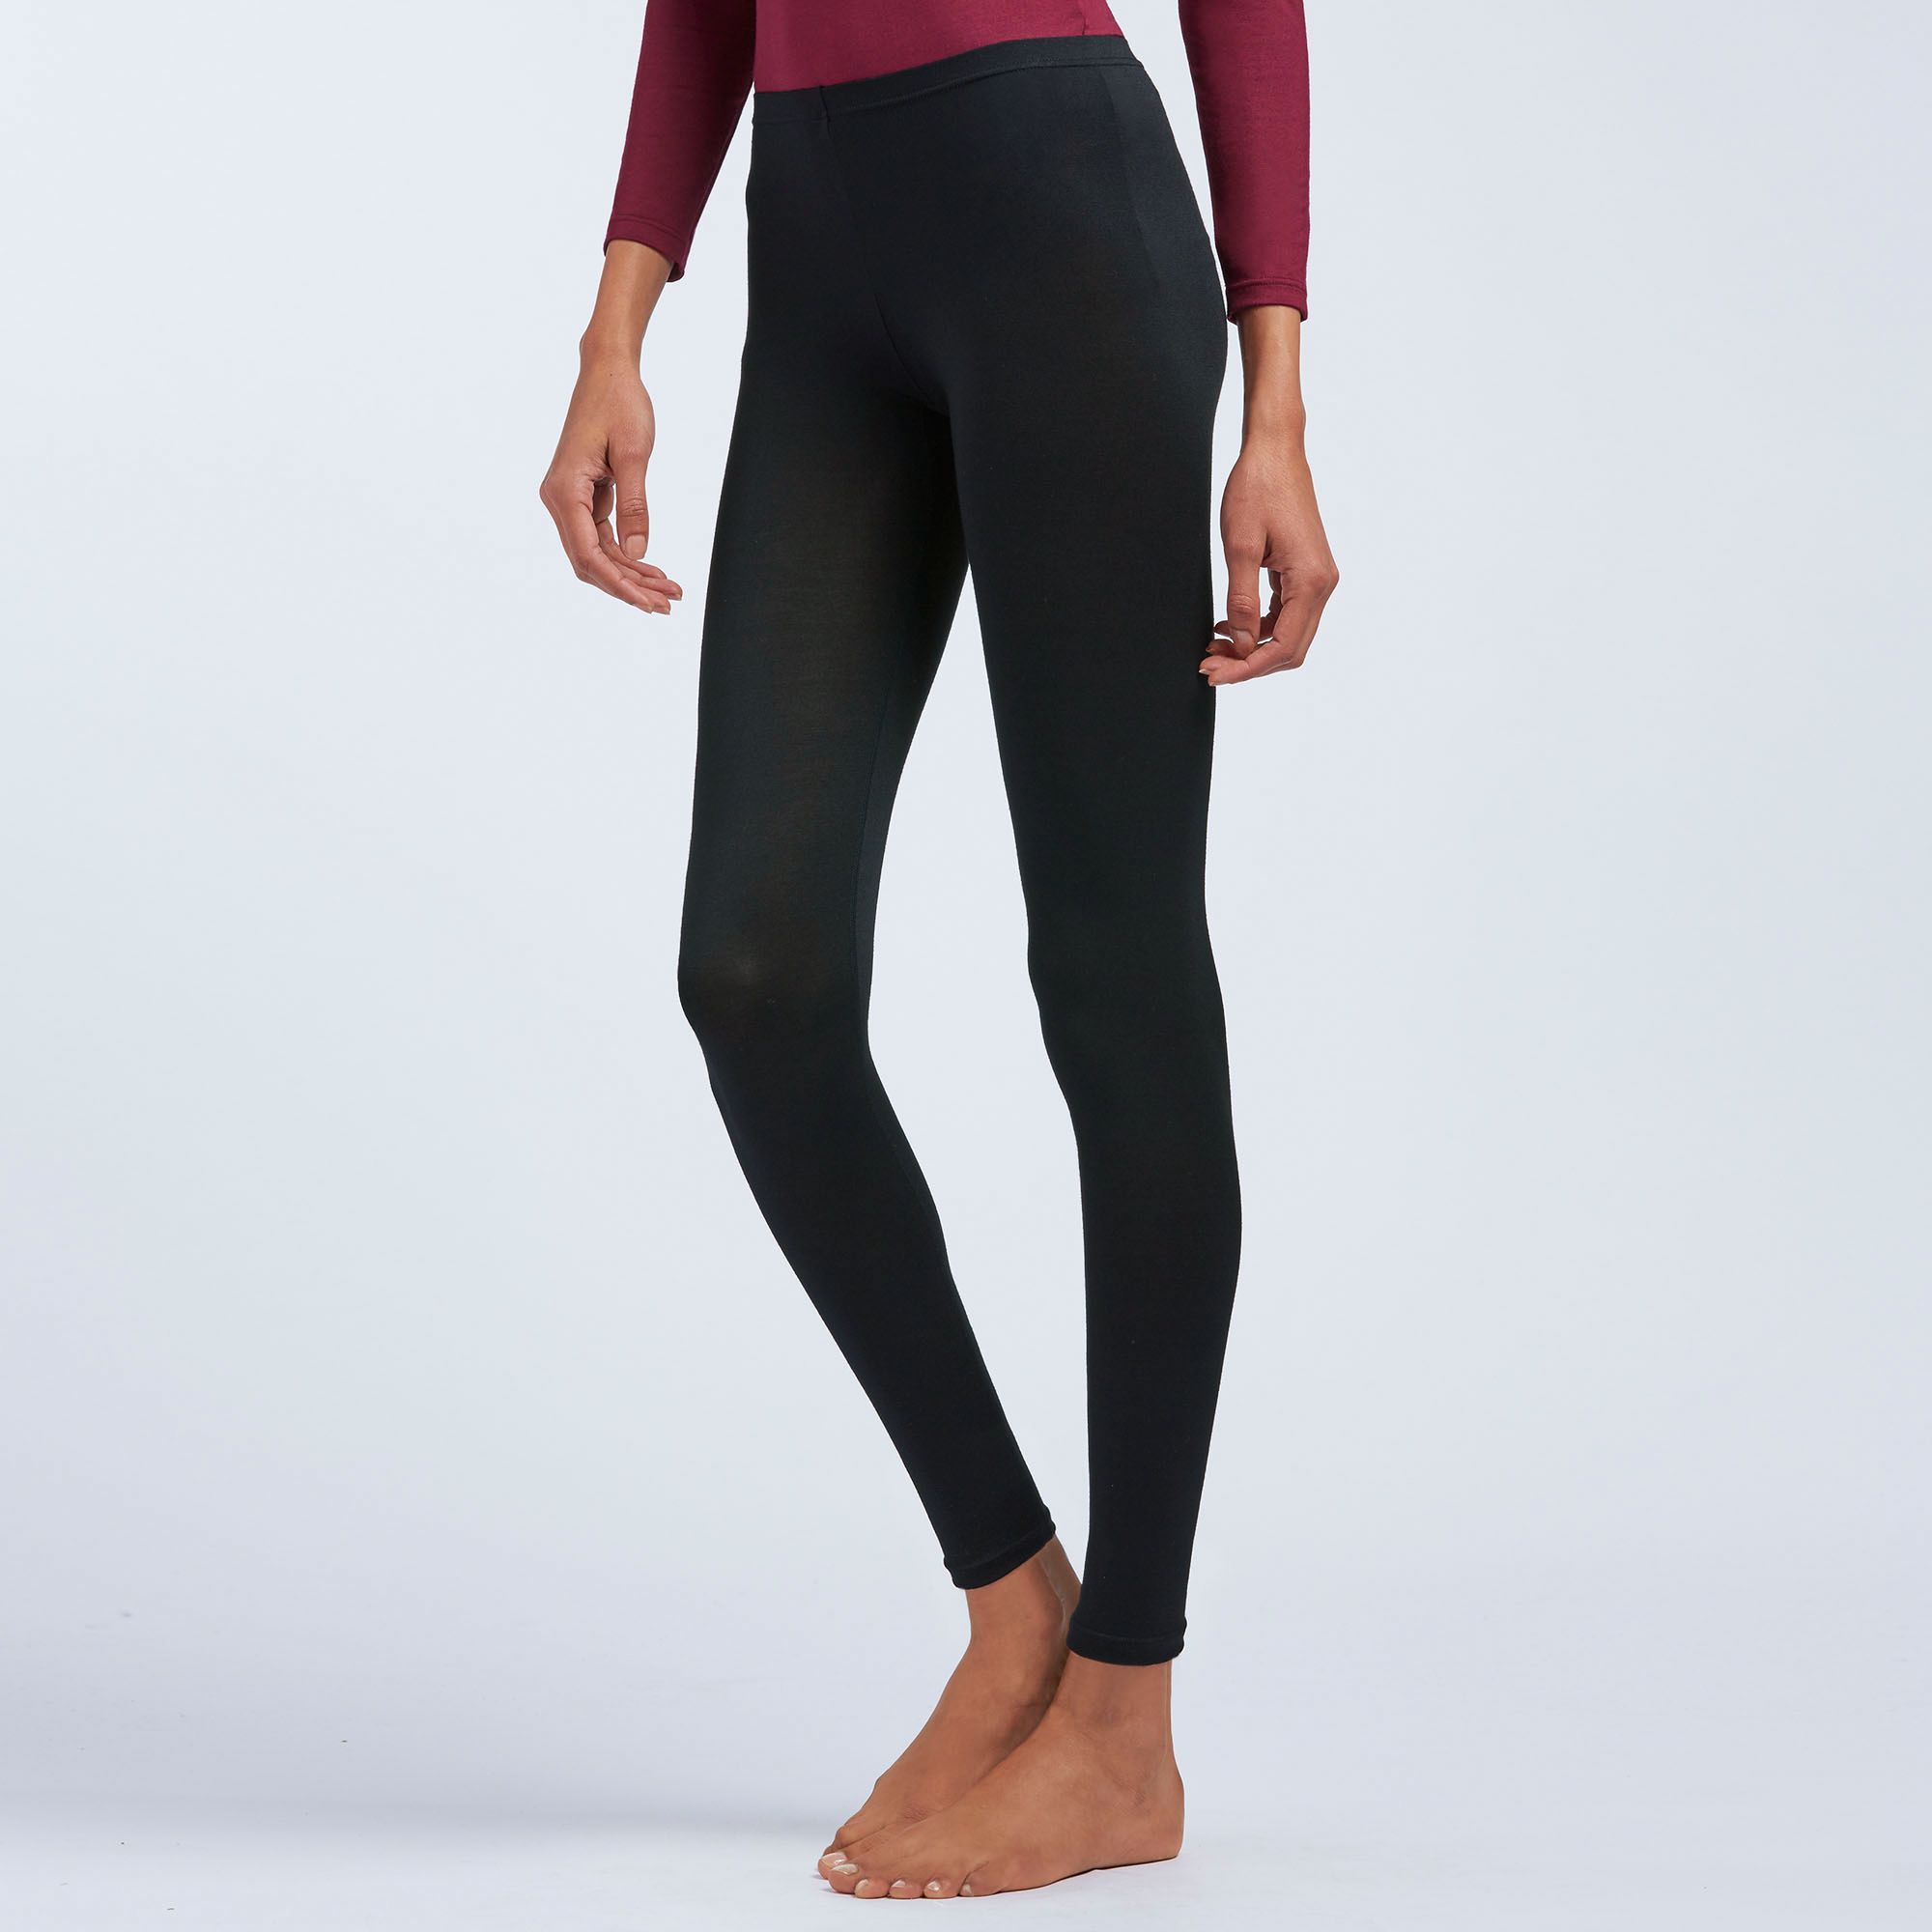 UNIQLO Women's HeatTech Leggings 10-Min Length Black Size: XS,S,M